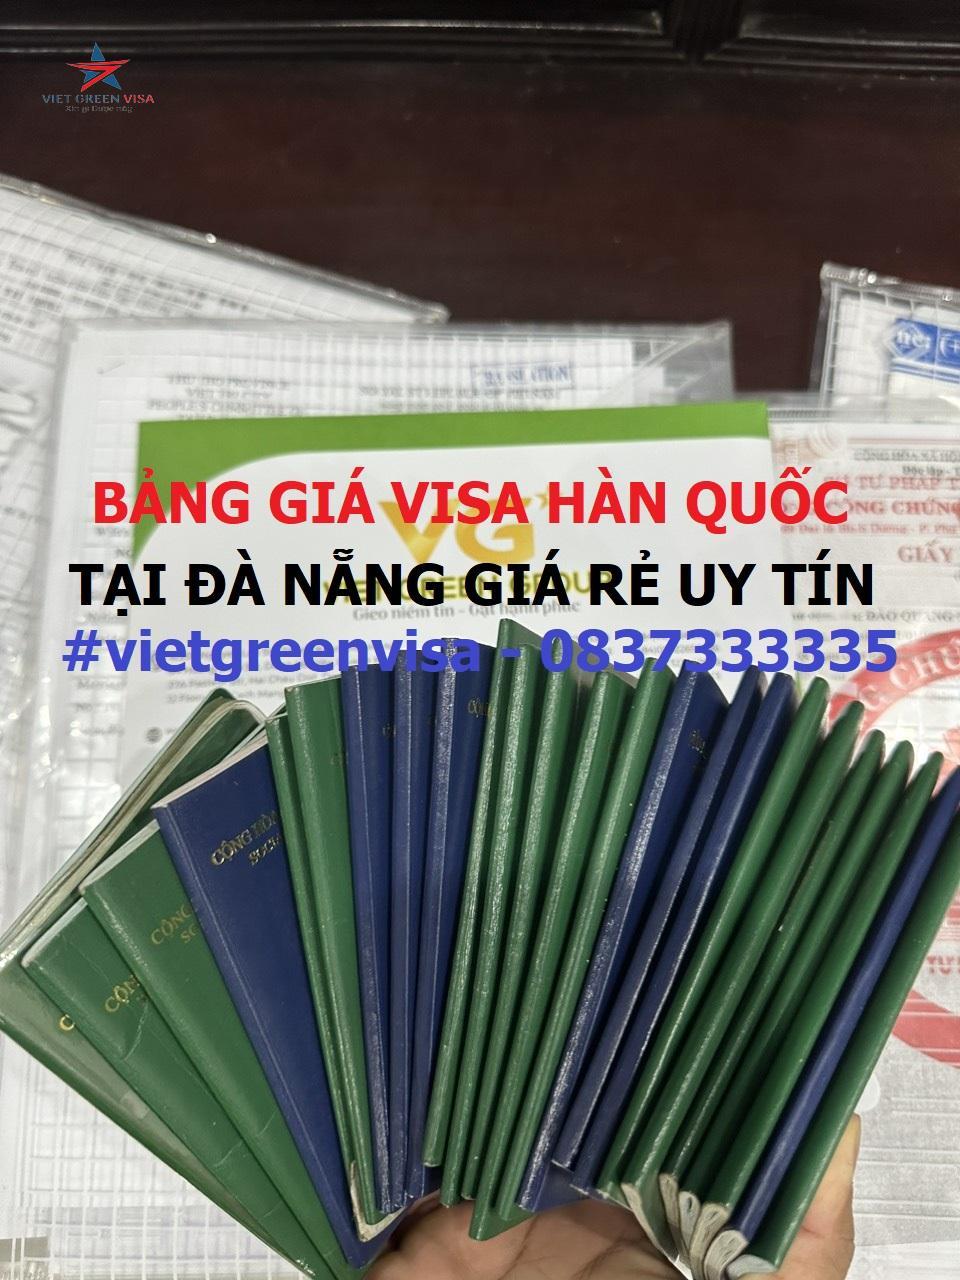 Dịch vụ xin visa Hàn Quốc tại Đà Nẵng uy tín trọn gói